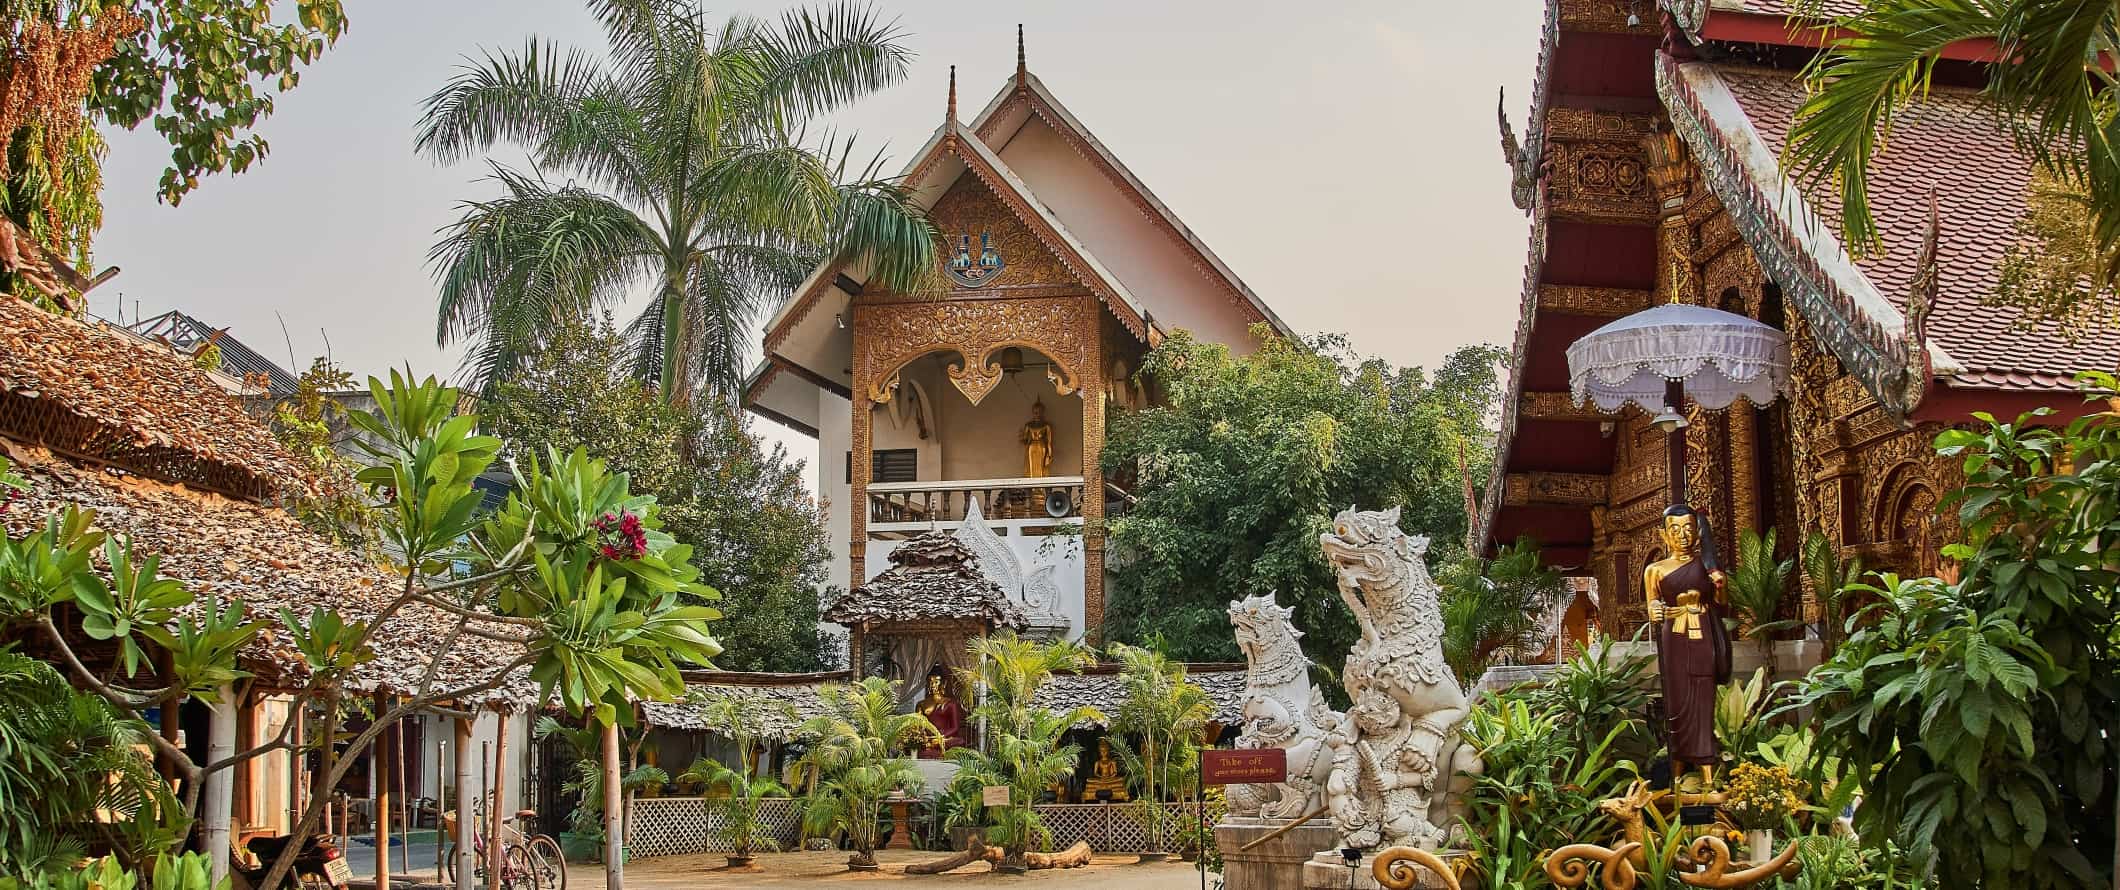 Um dos muitos templos budistas históricos incríveis em Chiangmai, Tailândia